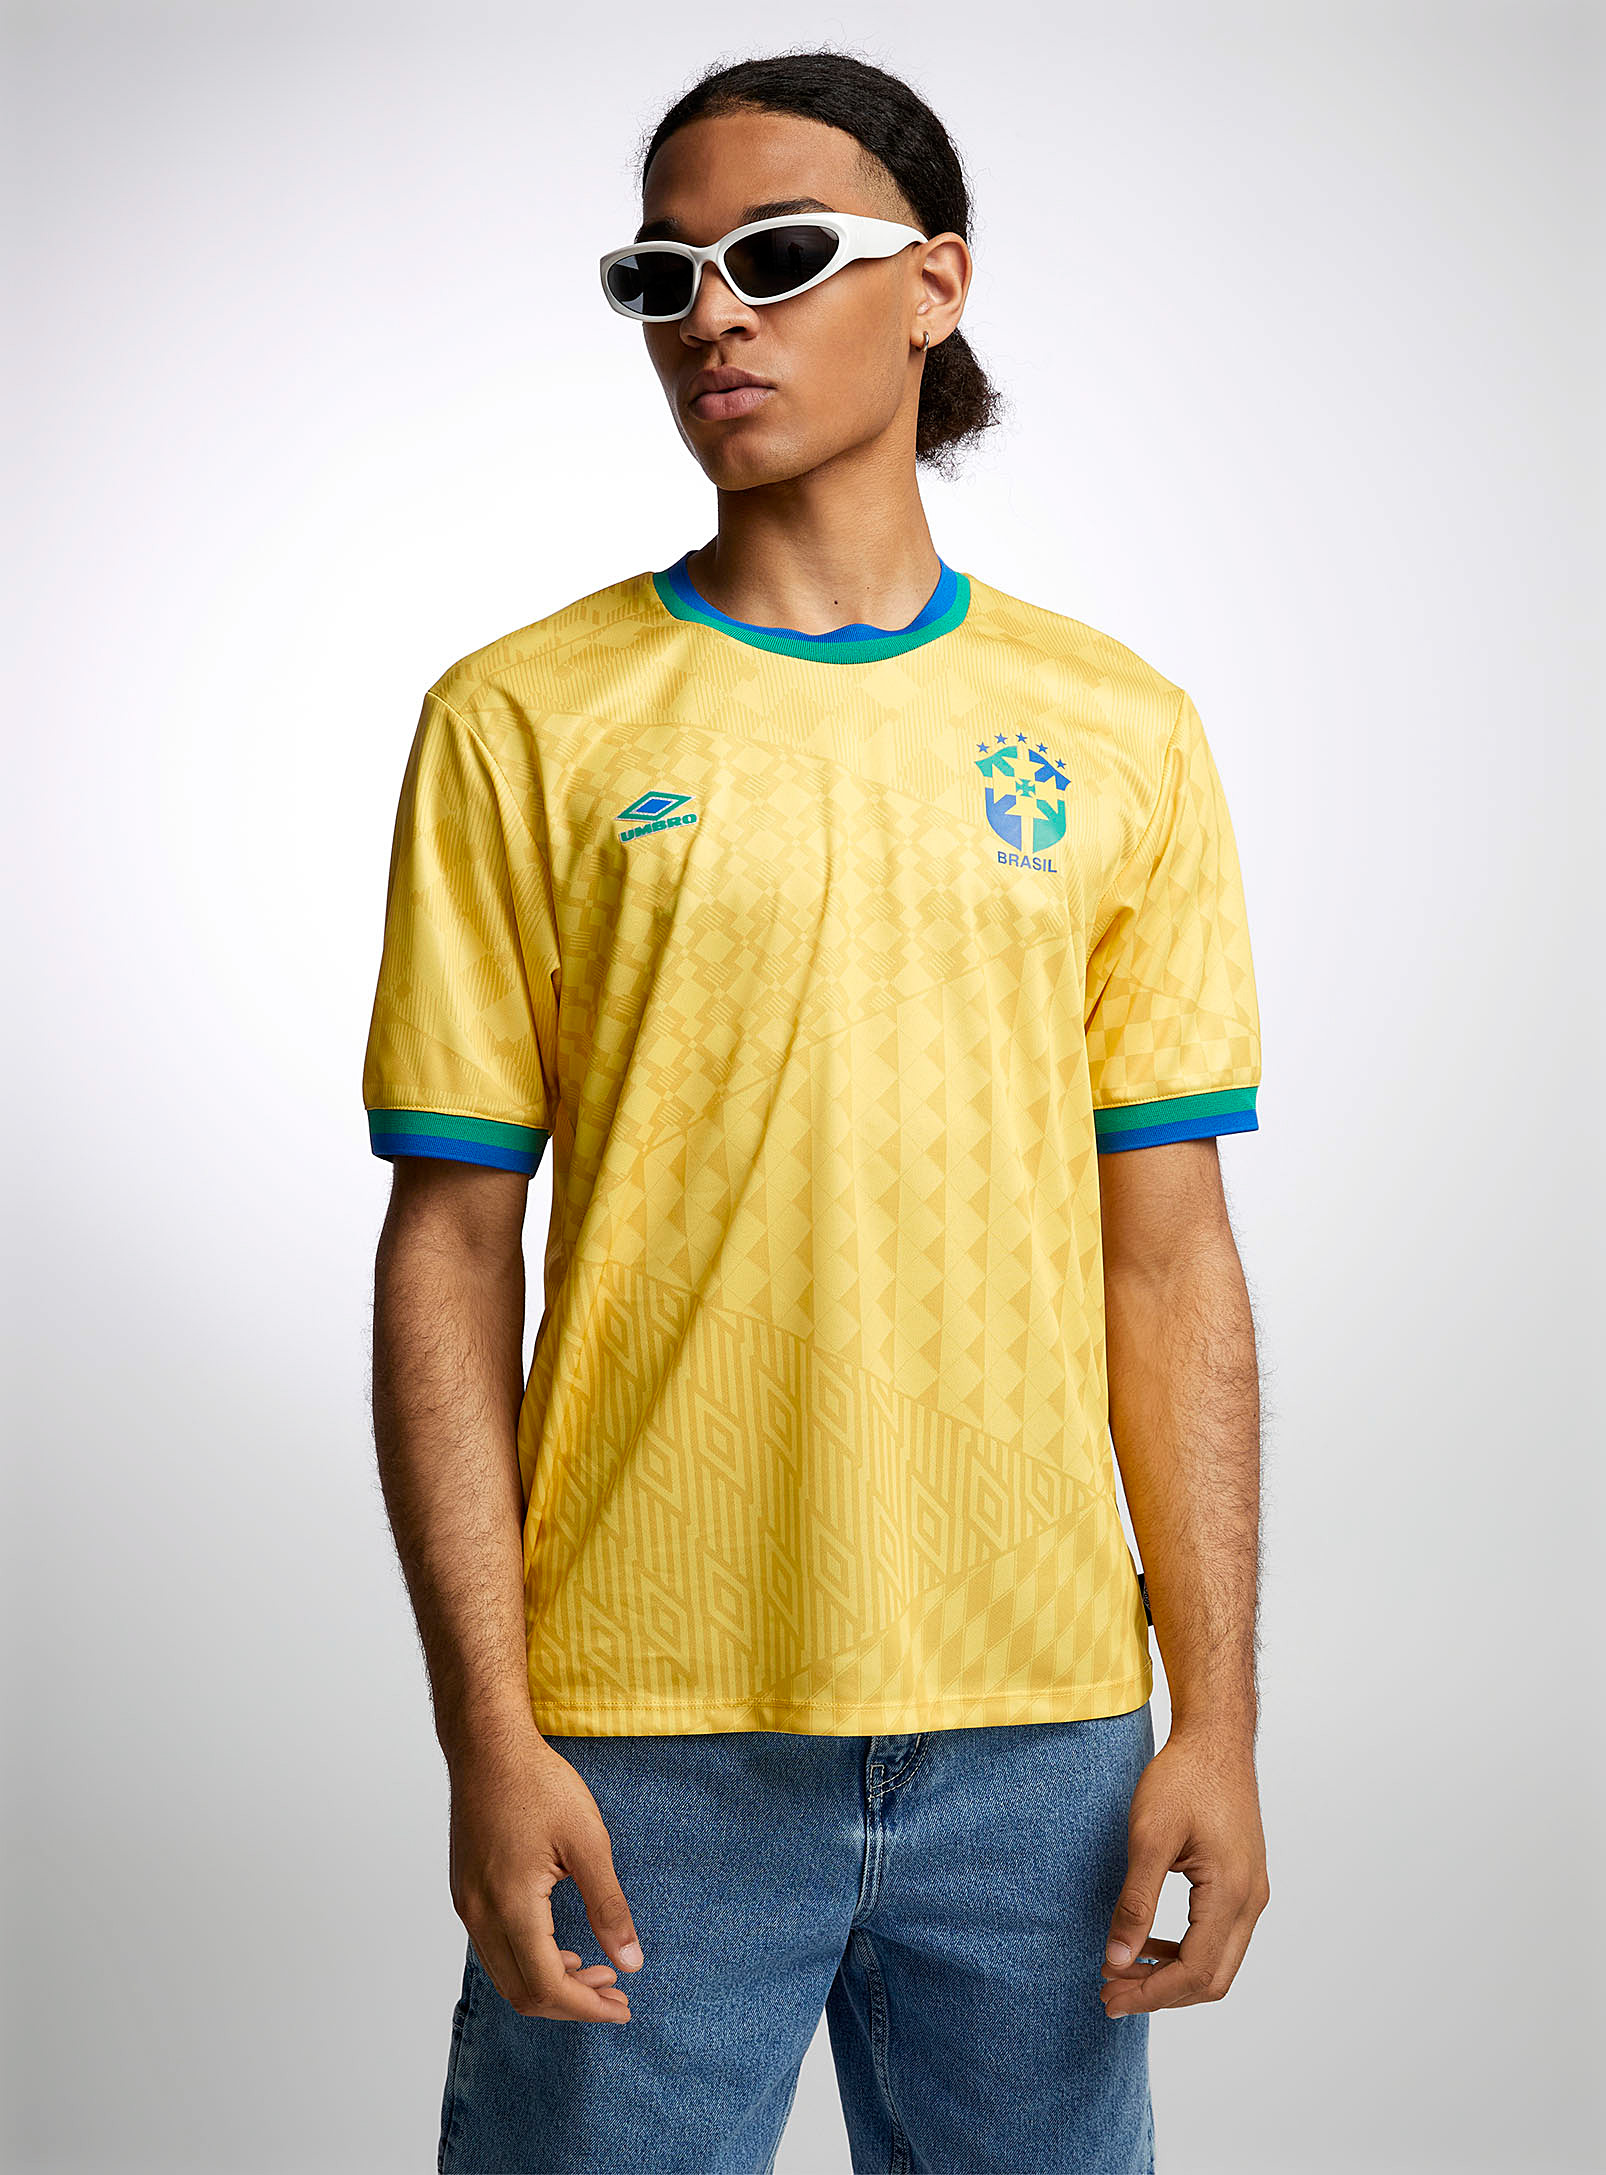 Umbro - Men's Brasil soccer jersey